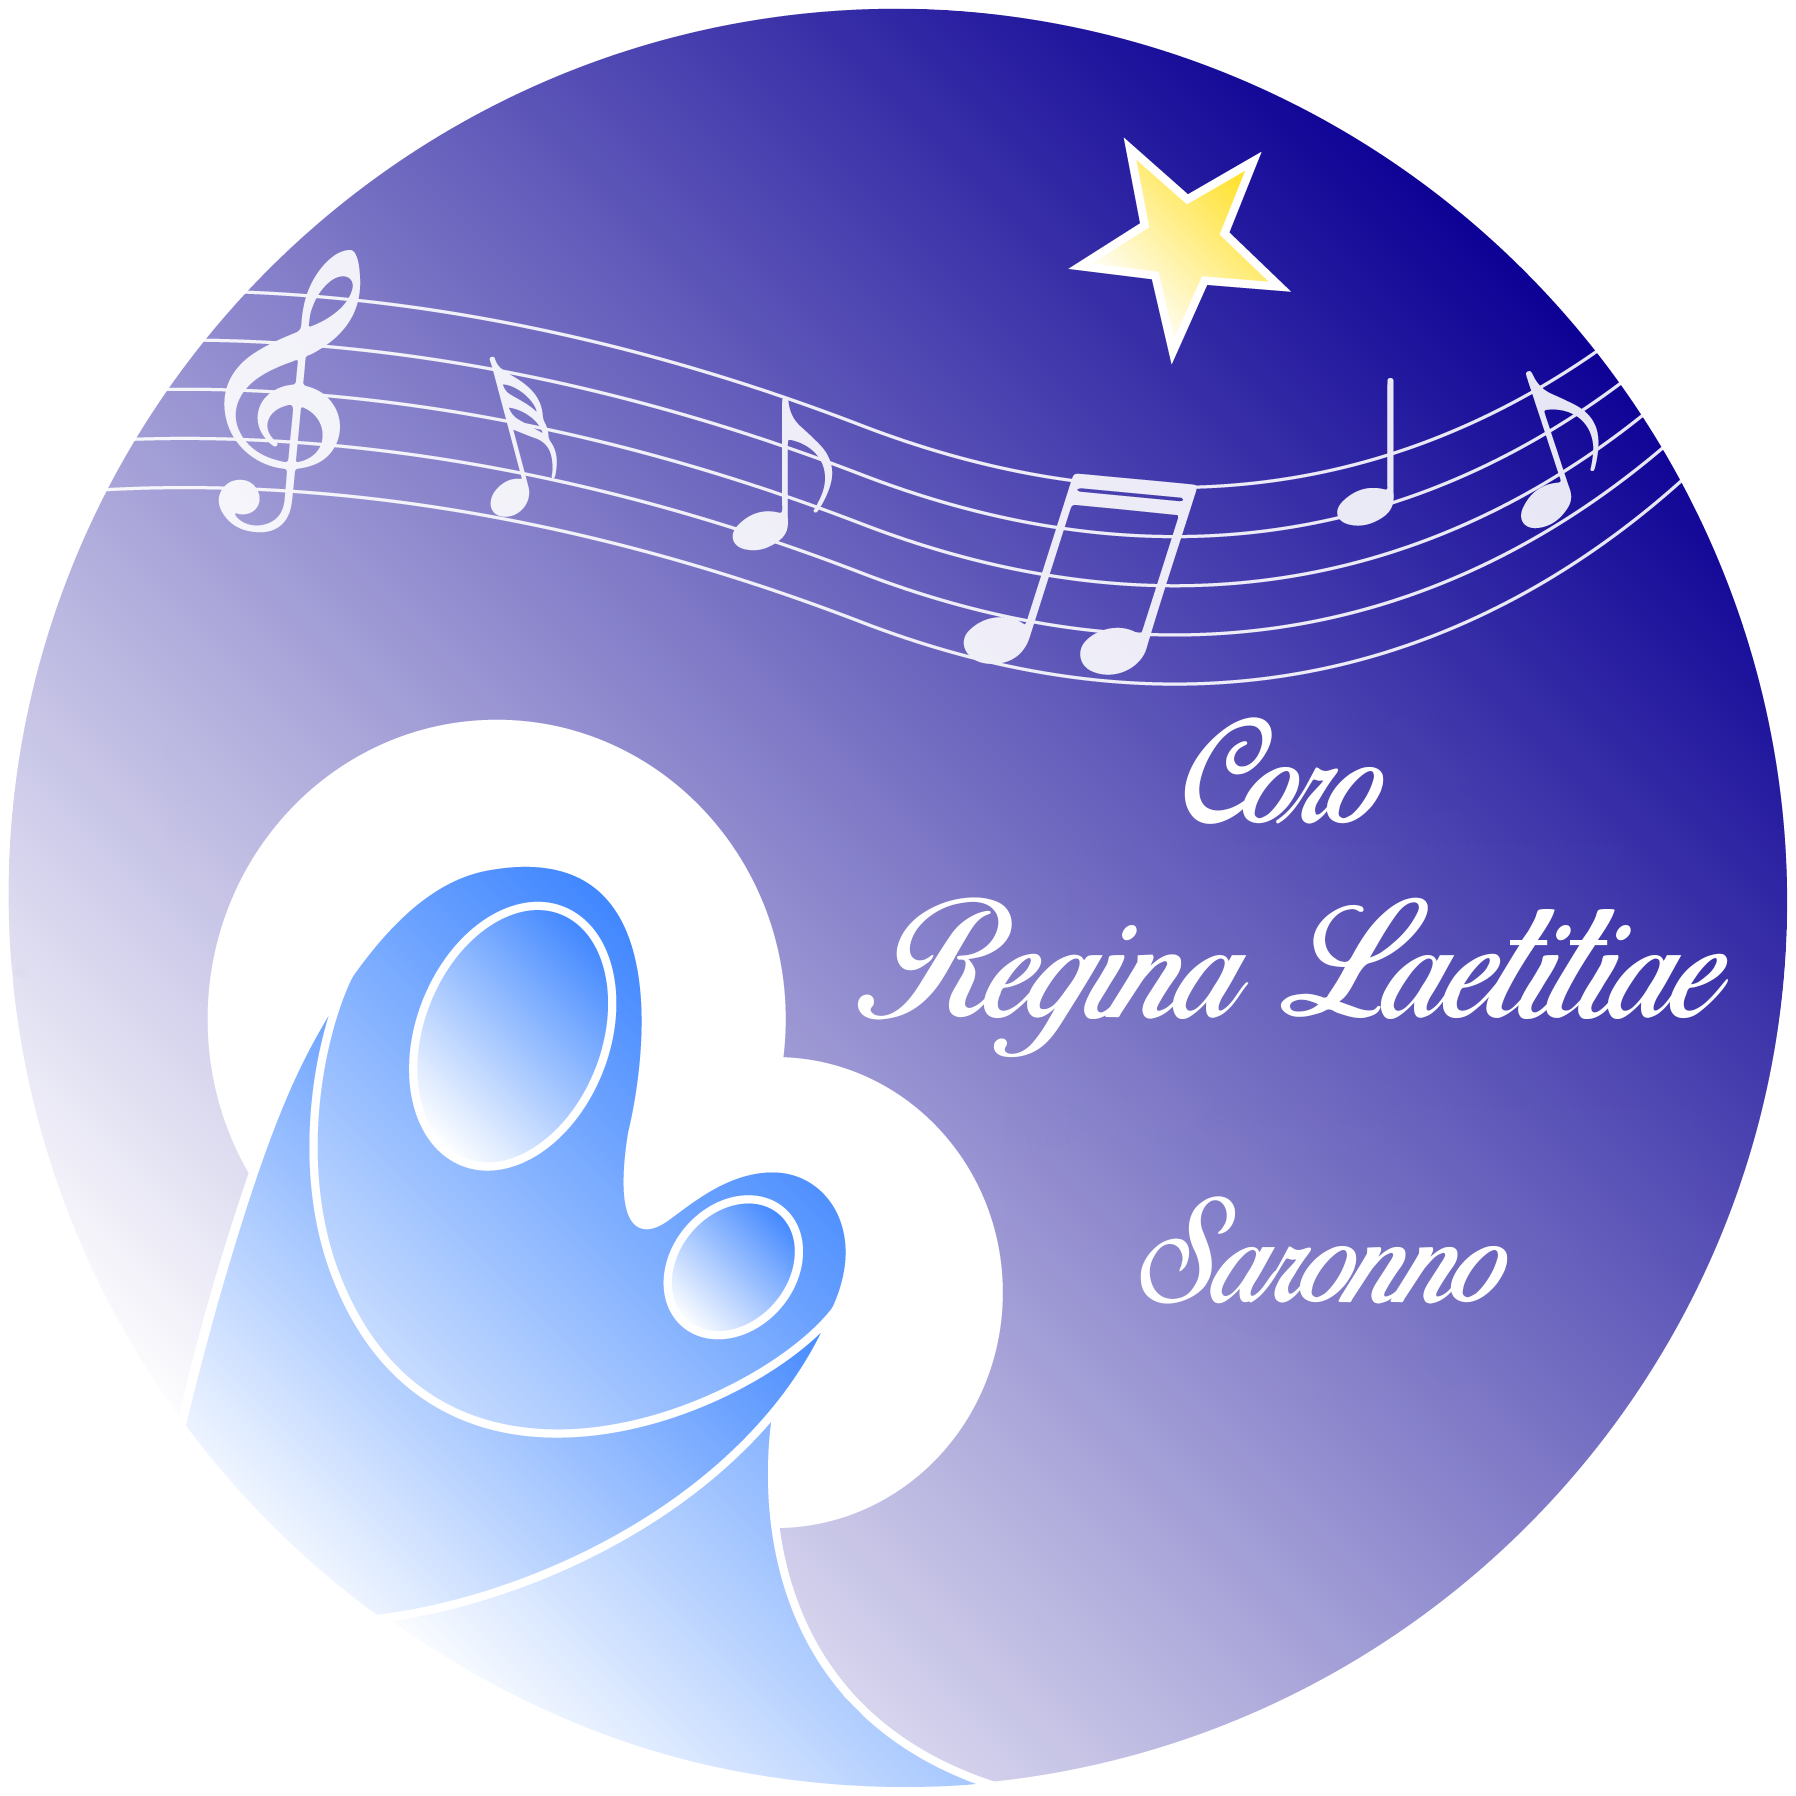 Coro Regina Laetitiae Saronno